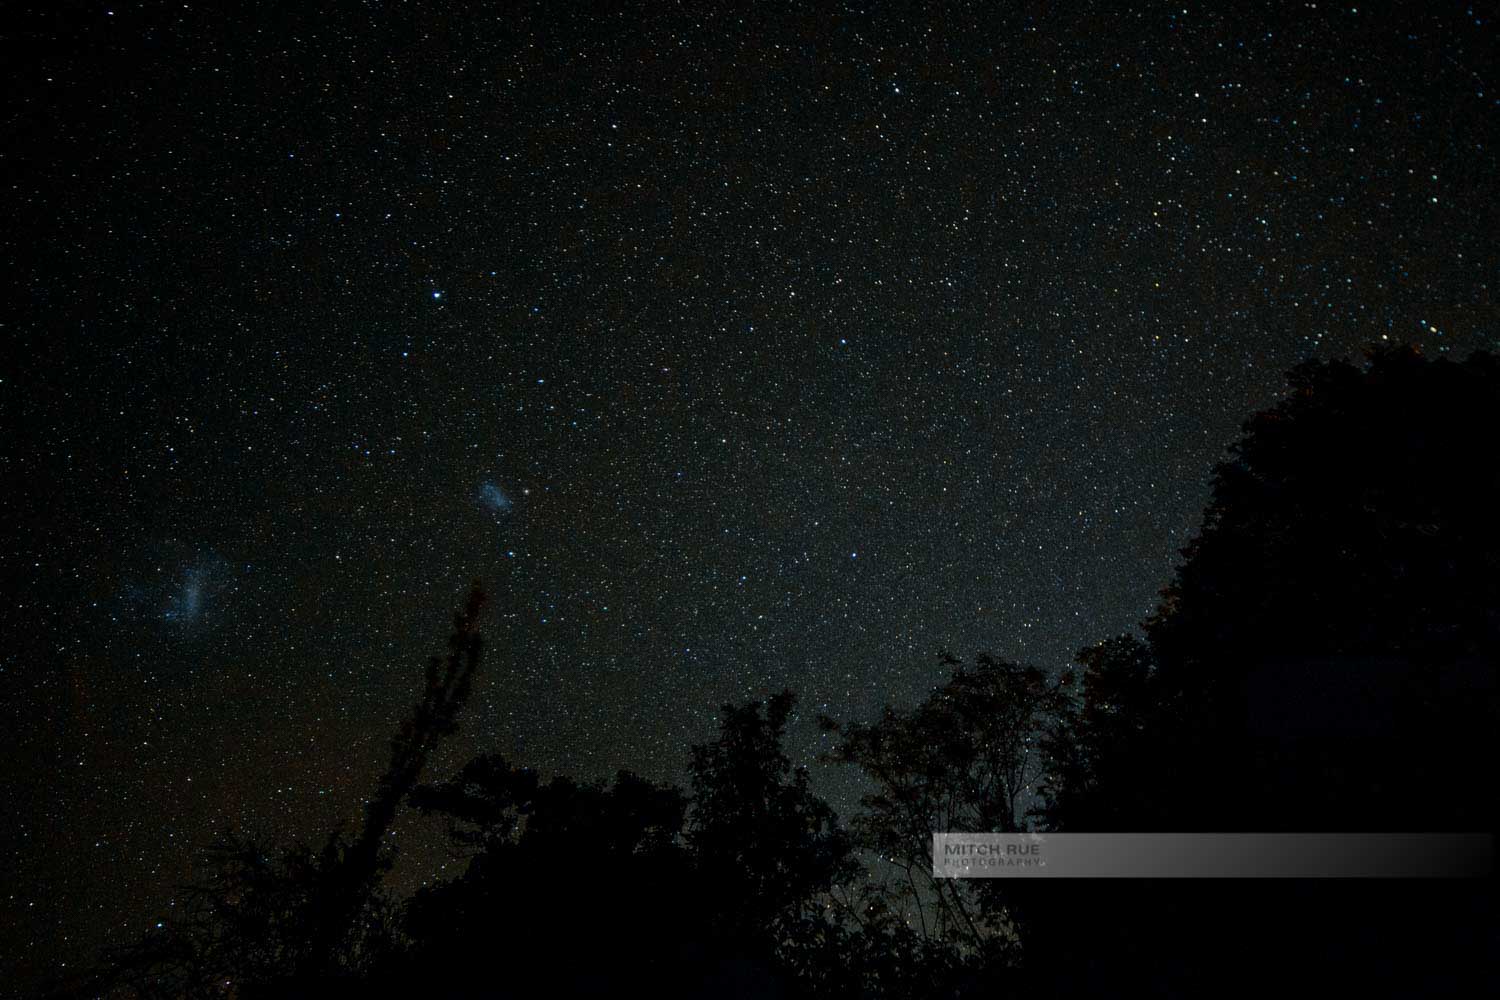 Das Elquital (Valle del Elqui) in Chile nachts, wo die vielen Sterne am Himmel besonders gut zu sehen sind